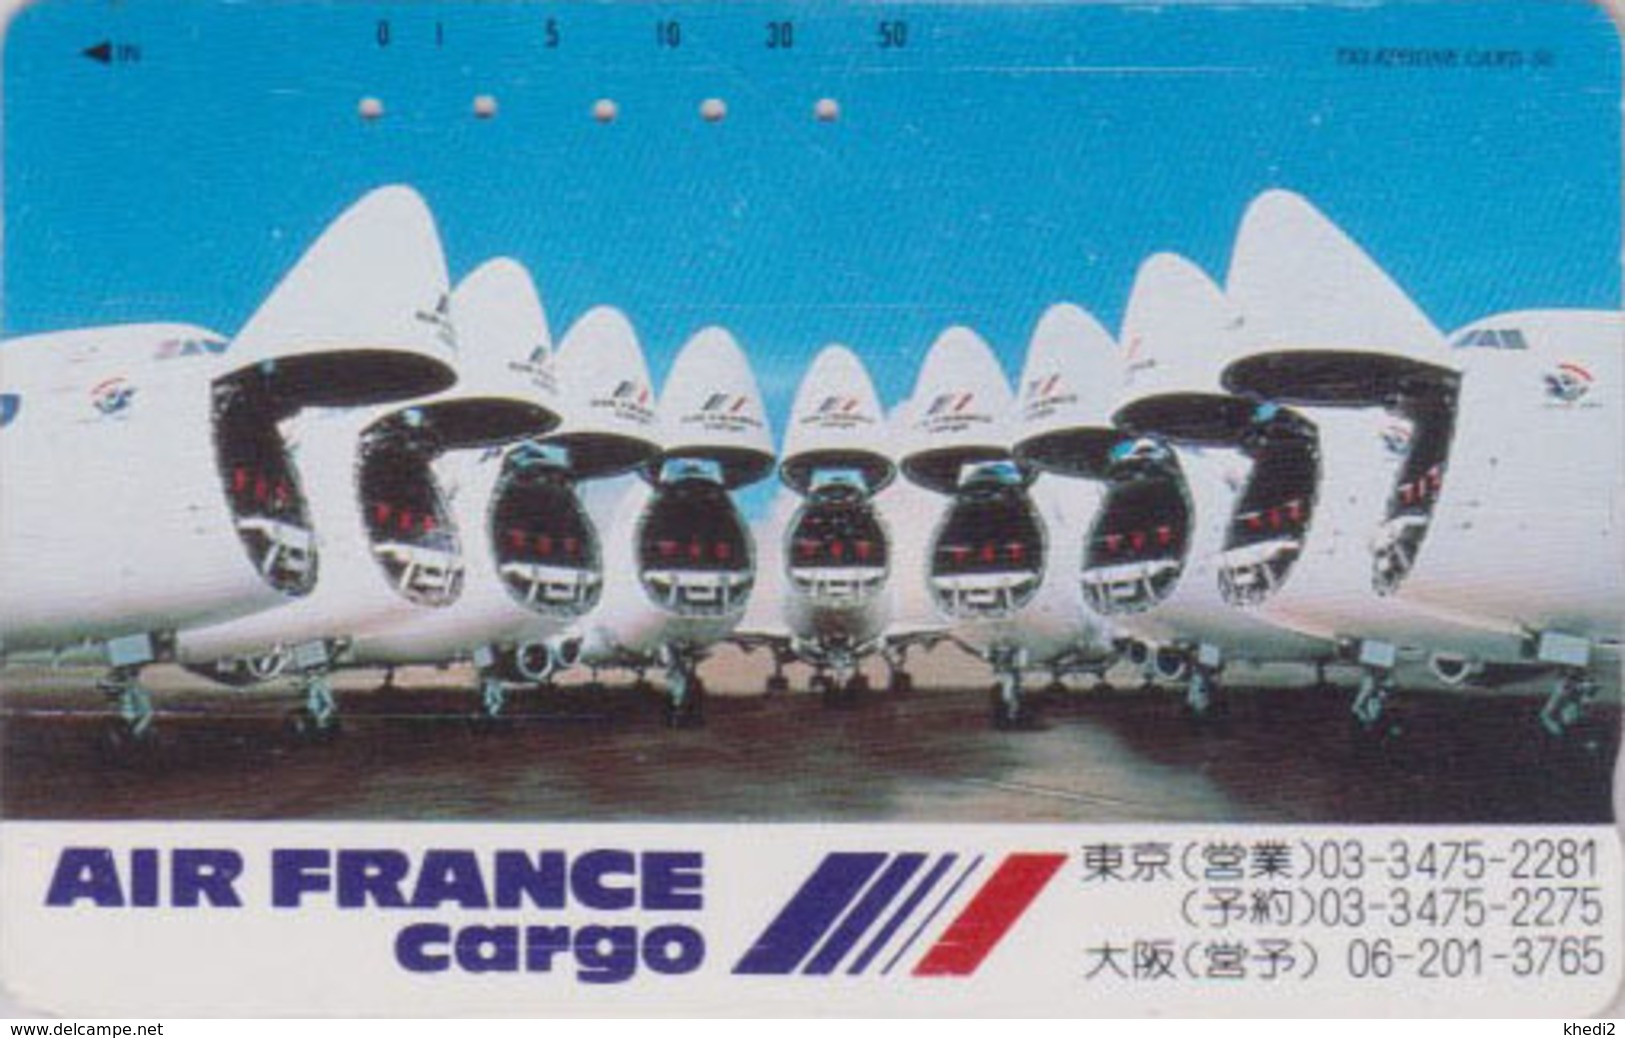 Télécarte Japon / 110-102488 - AIR FRANCE CARGO - AVION - PLANE AIRLINES Japan Phonecard - FLUGZEUG - 2253 - Avions